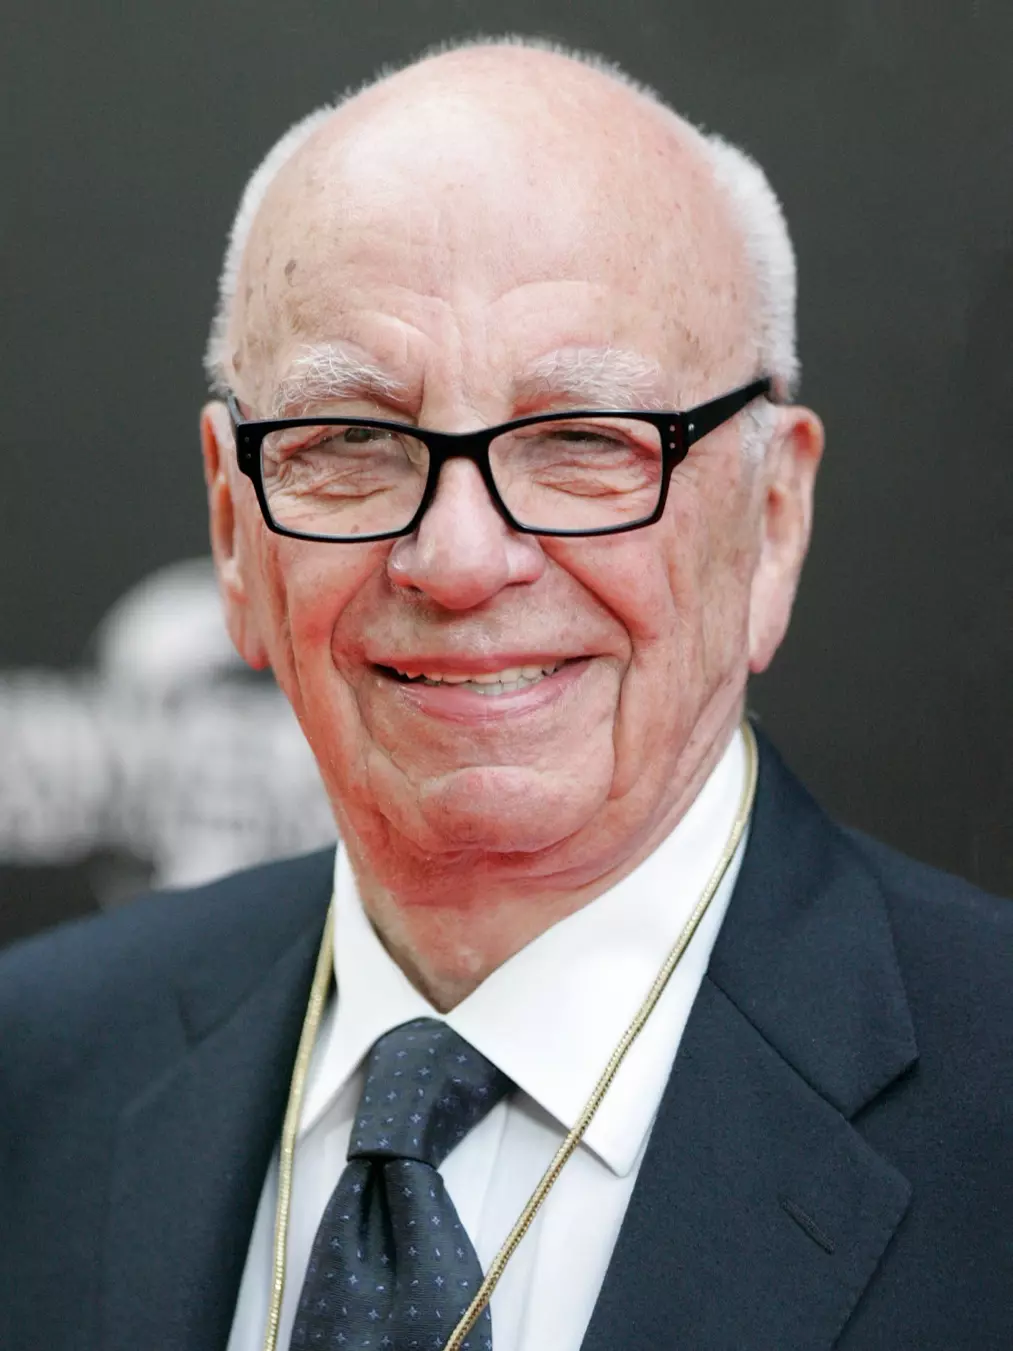 Rupert Murdoch steps down as head of News Corp and Fox Corp